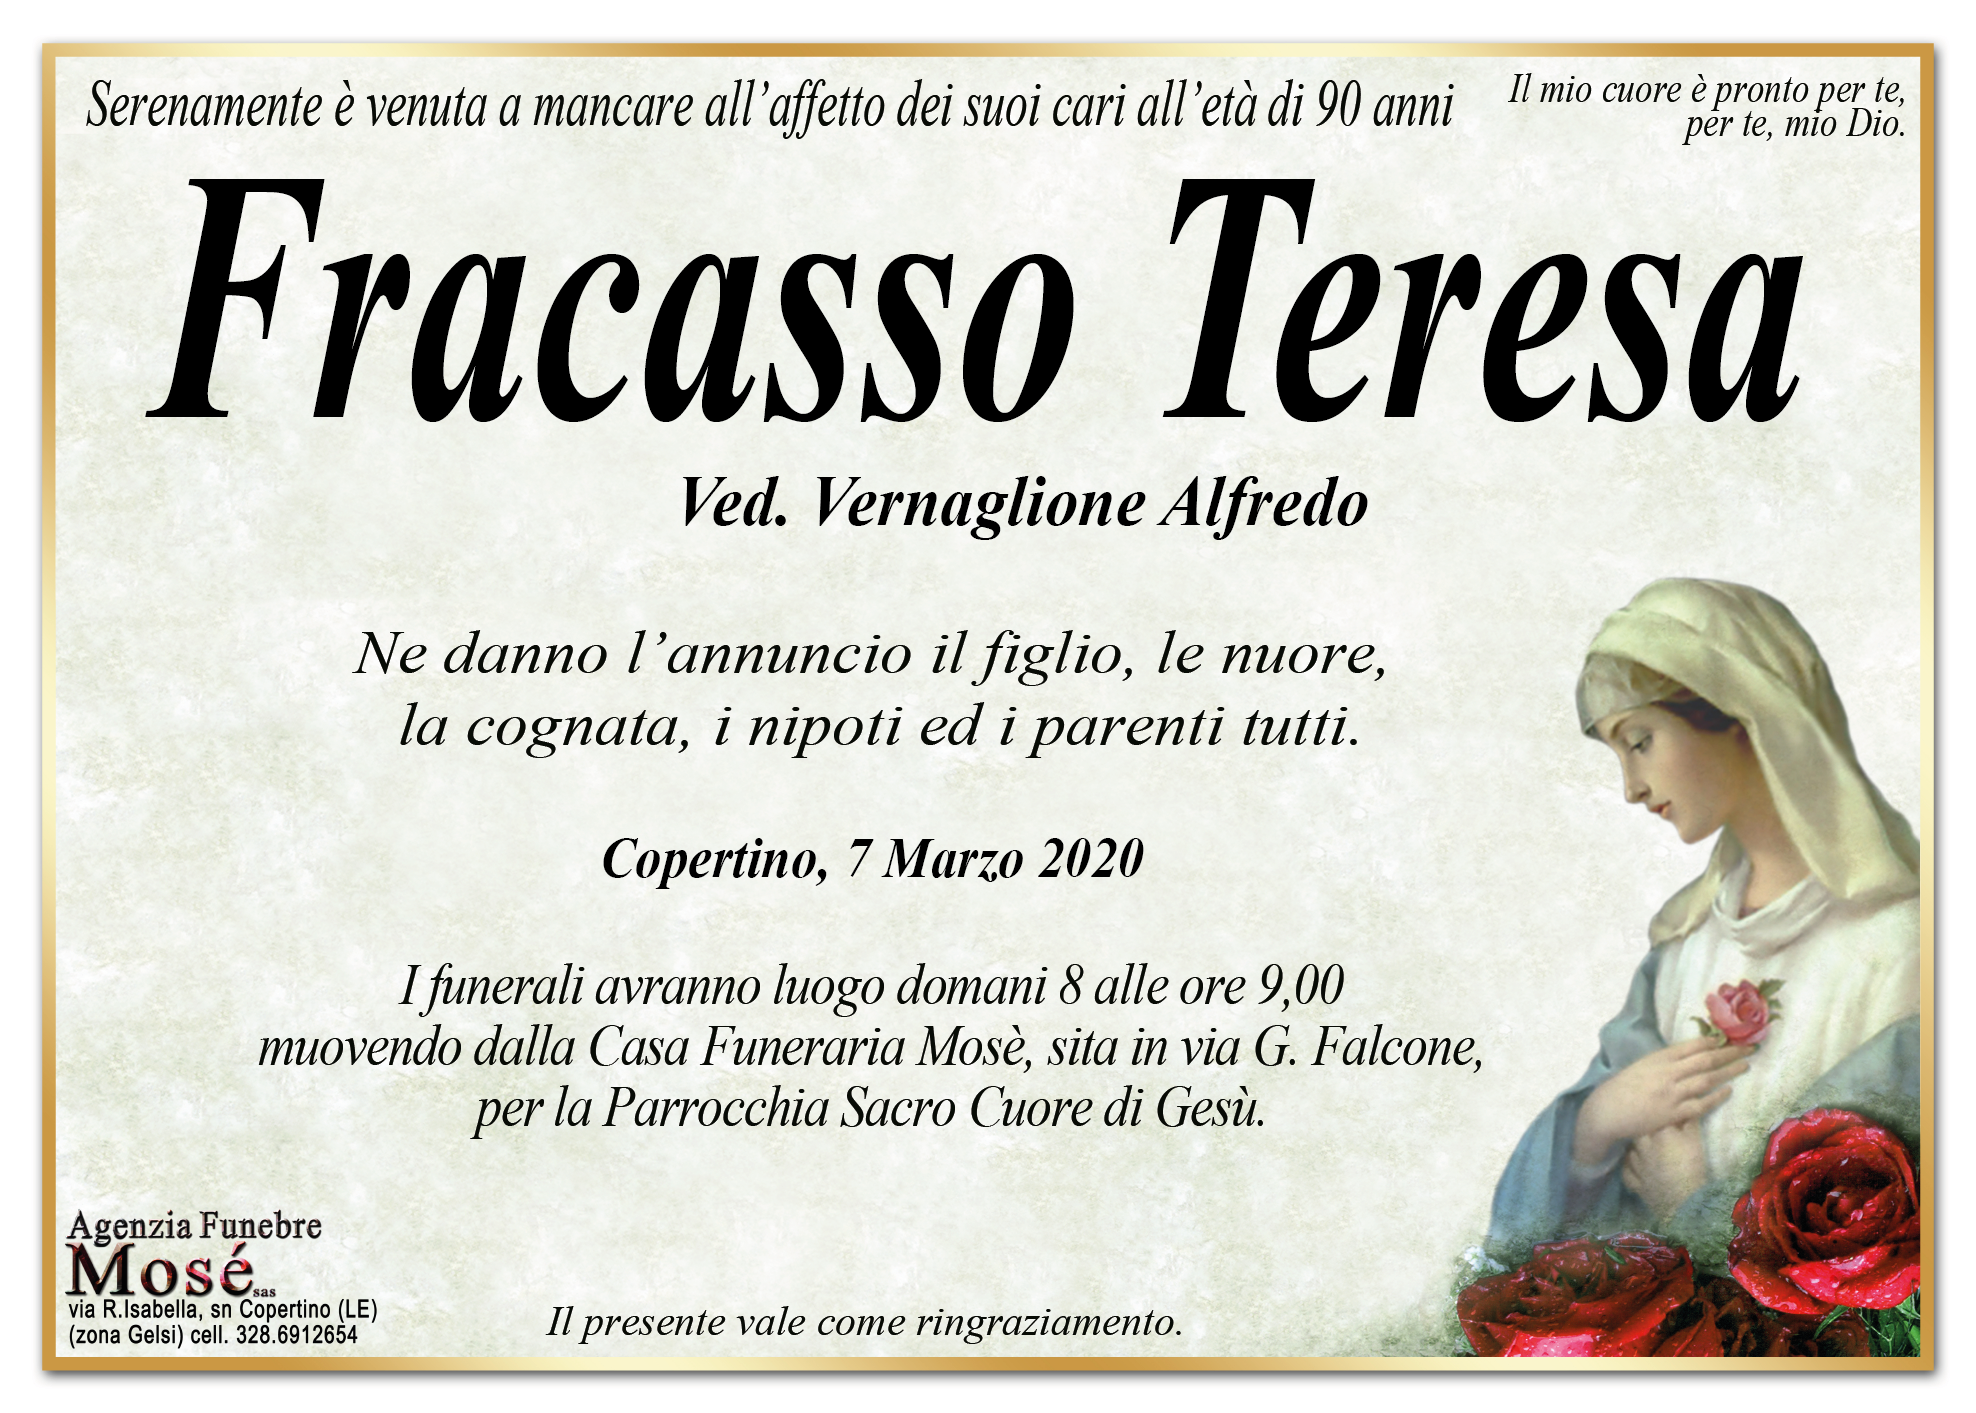 Teresa Fracasso